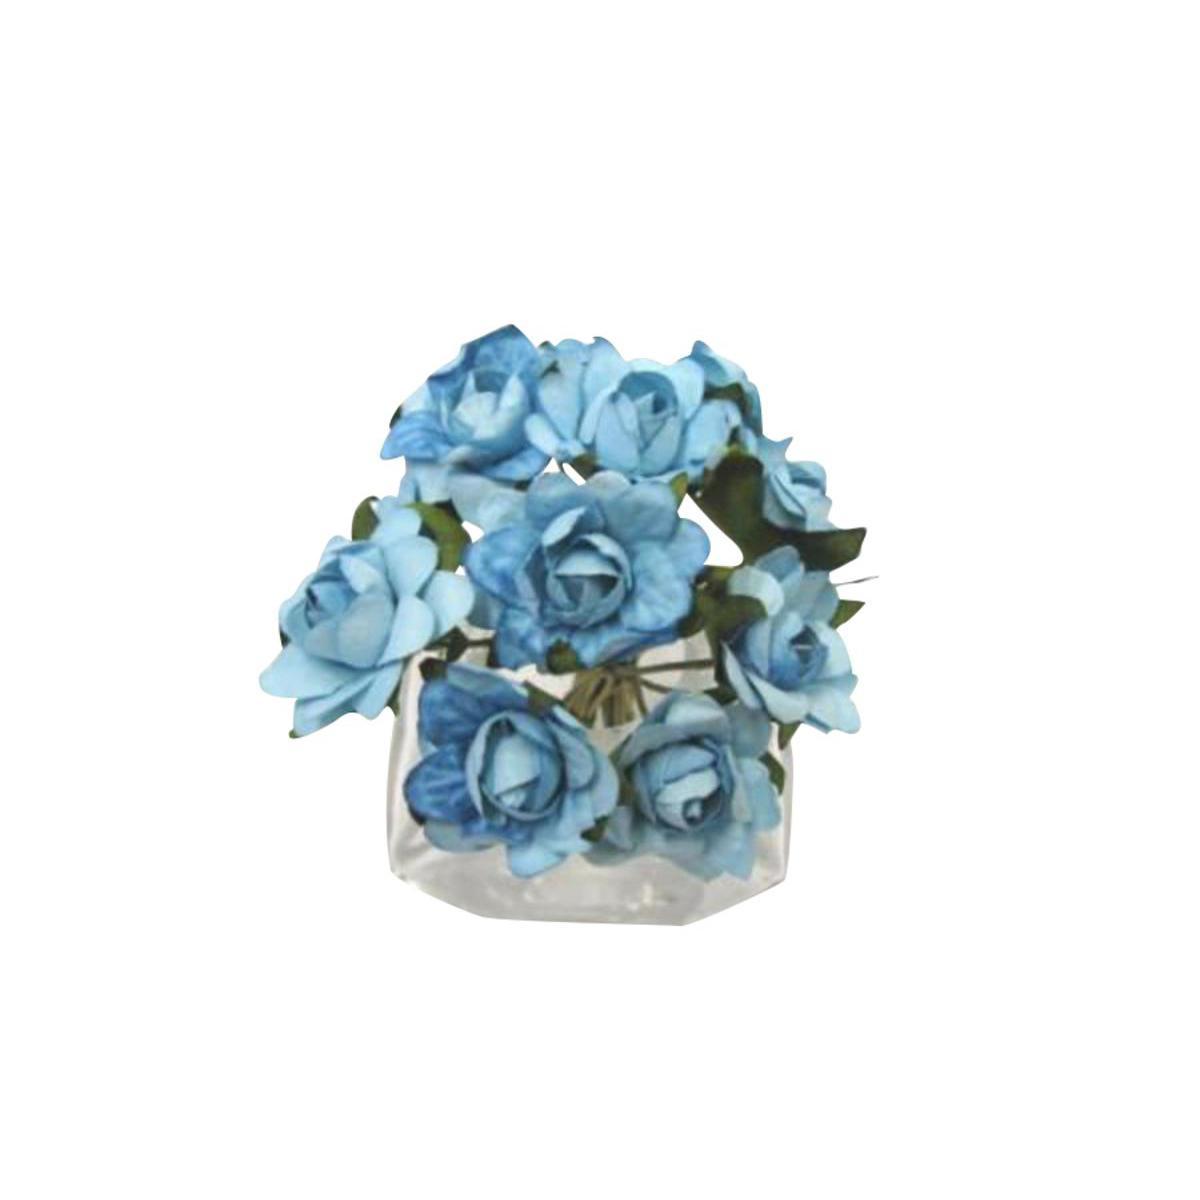 Composition de 12 fleurs - 2,5 cm - Papier - Bleu turquoise